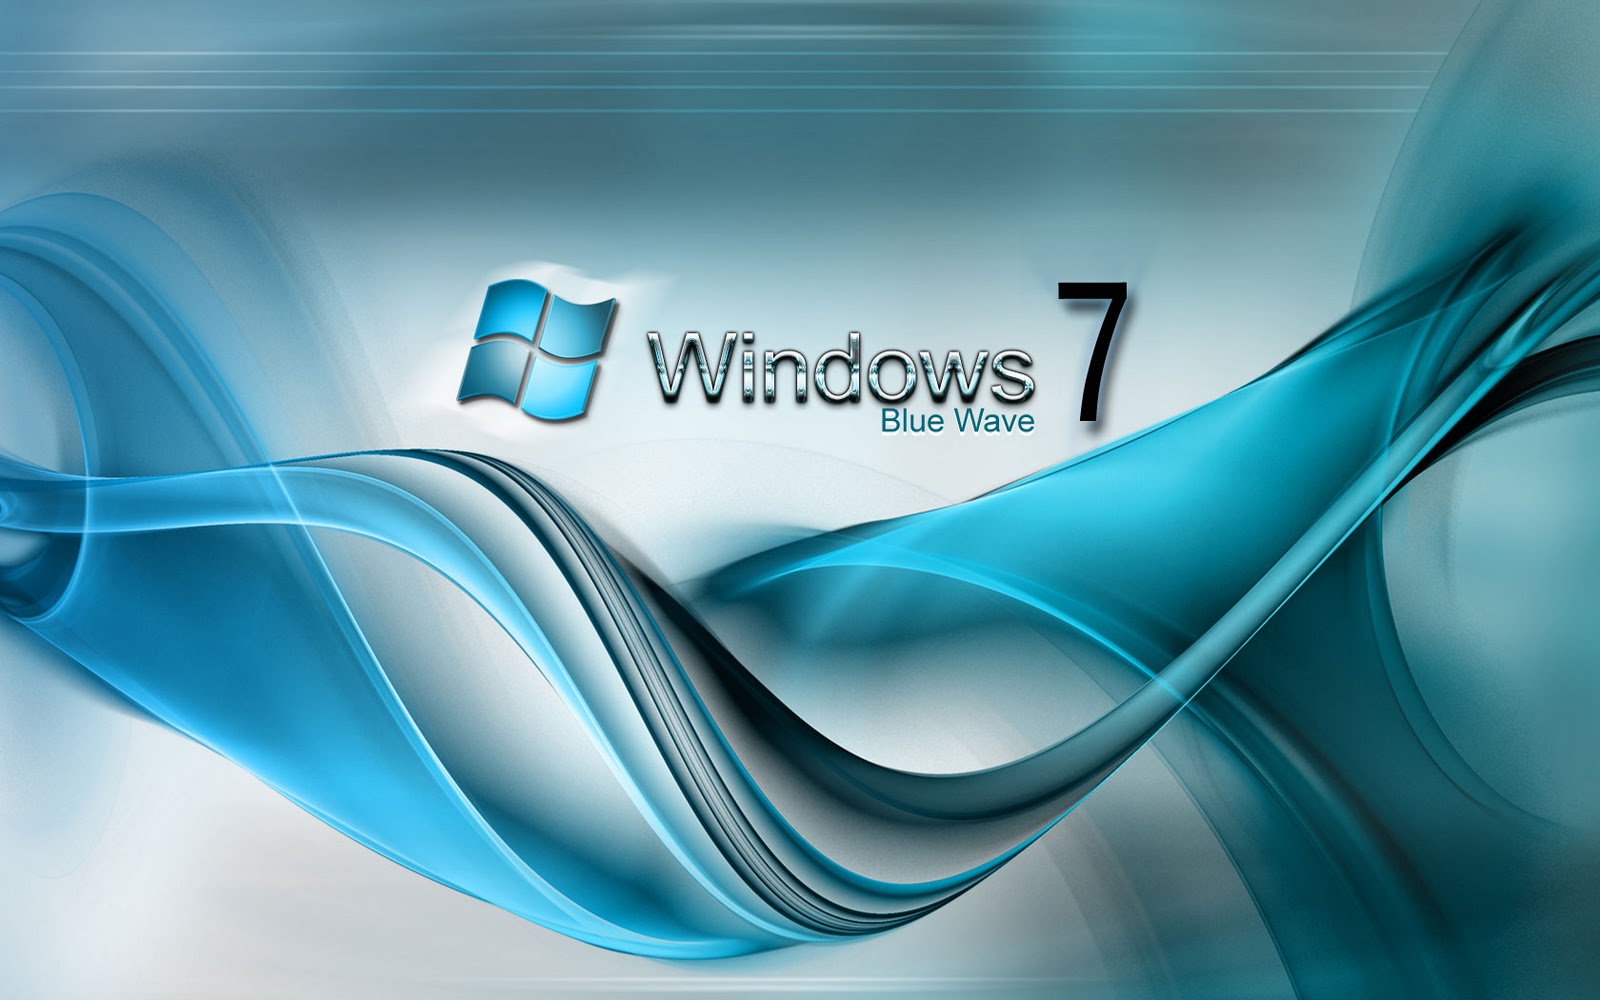 HP Windows 7 Wallpaper 1920x1200 - WallpaperSafari